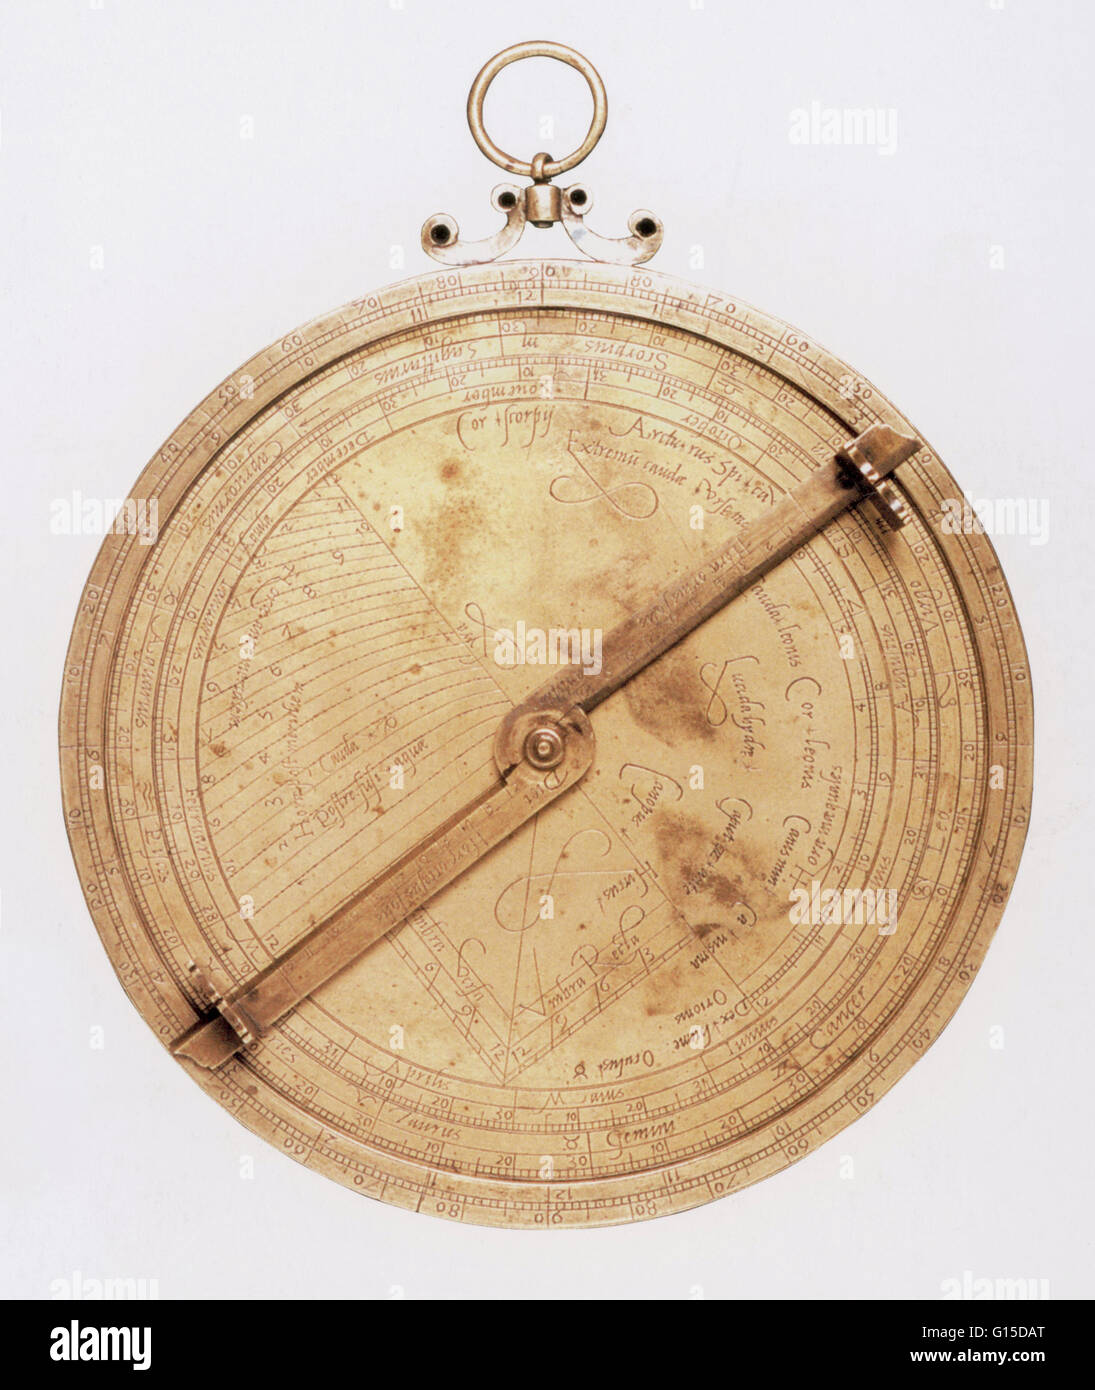 Astrolabio di Michel Piquer (1542-1580). L'astrolabio è un inizio di tempo-telling strumento utilizzato per calcolare le posizioni del sole e delle stelle nel cielo in un dato momento e luogo. Sviluppato nel mondo islamico, l'astrolabio è stato usato per determinare p Foto Stock